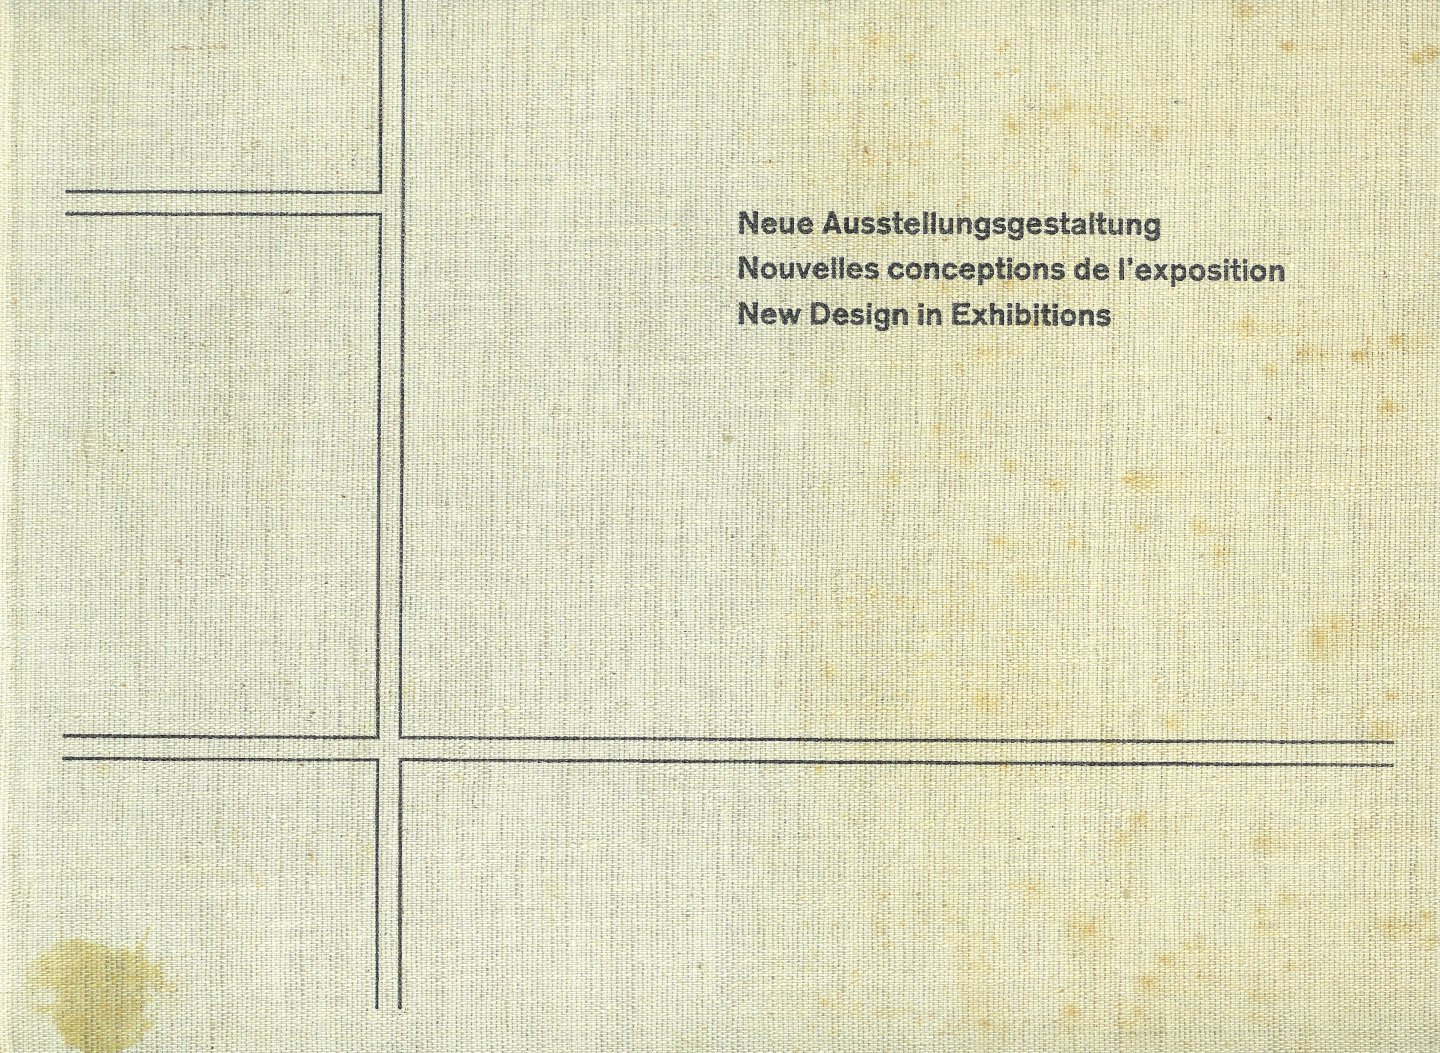 Lohse Richard P. ( schilder  graficus constructivist ) - Neue Ausstellungsgestaltung Nouvelles conceptions de l'exposition New Design in Exhibitions